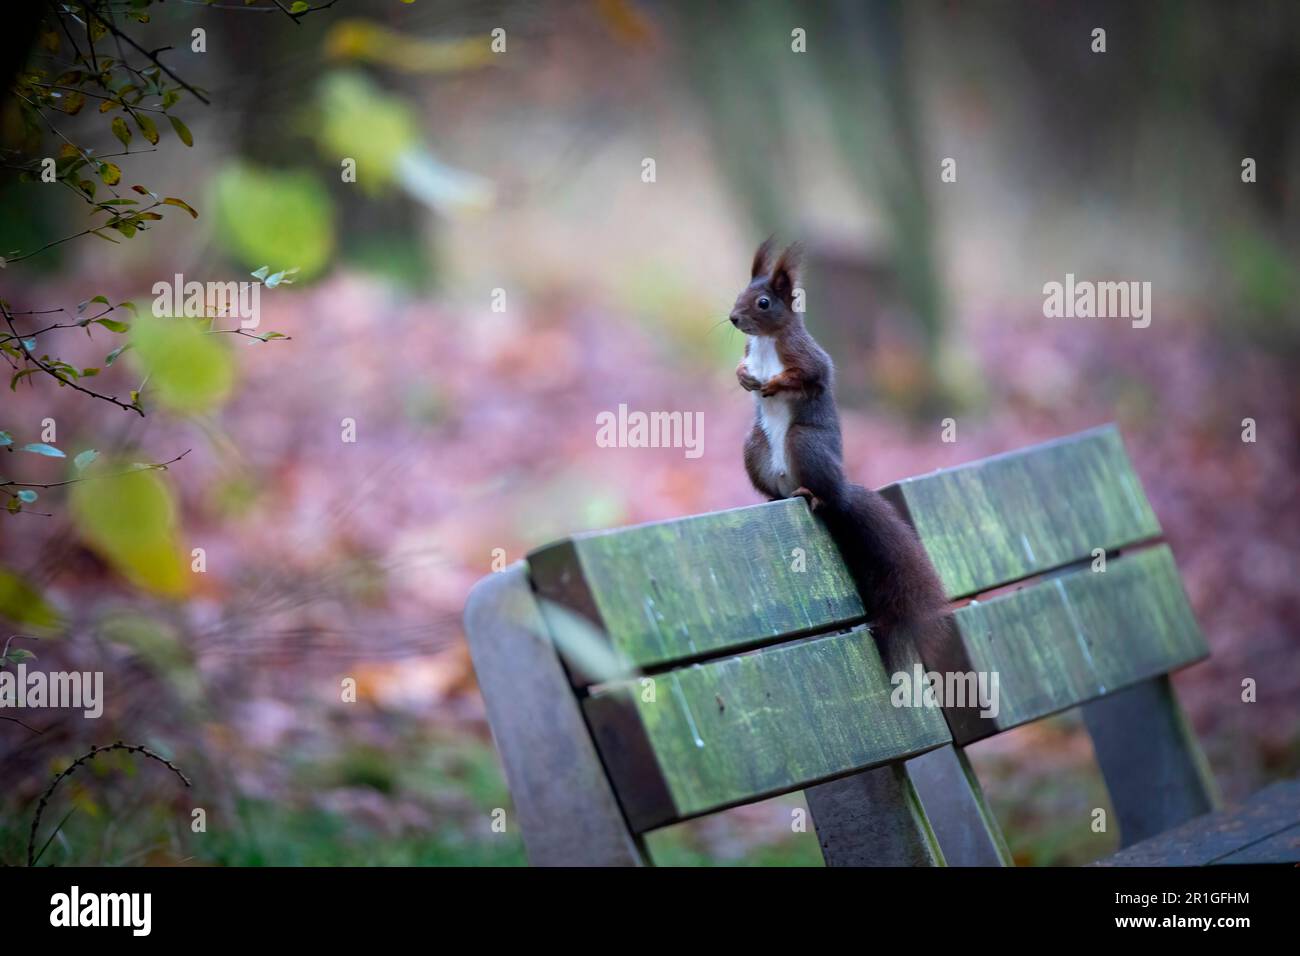 Magnifique écureuil assis sur un banc et observe, la photo de Paris. Banque D'Images